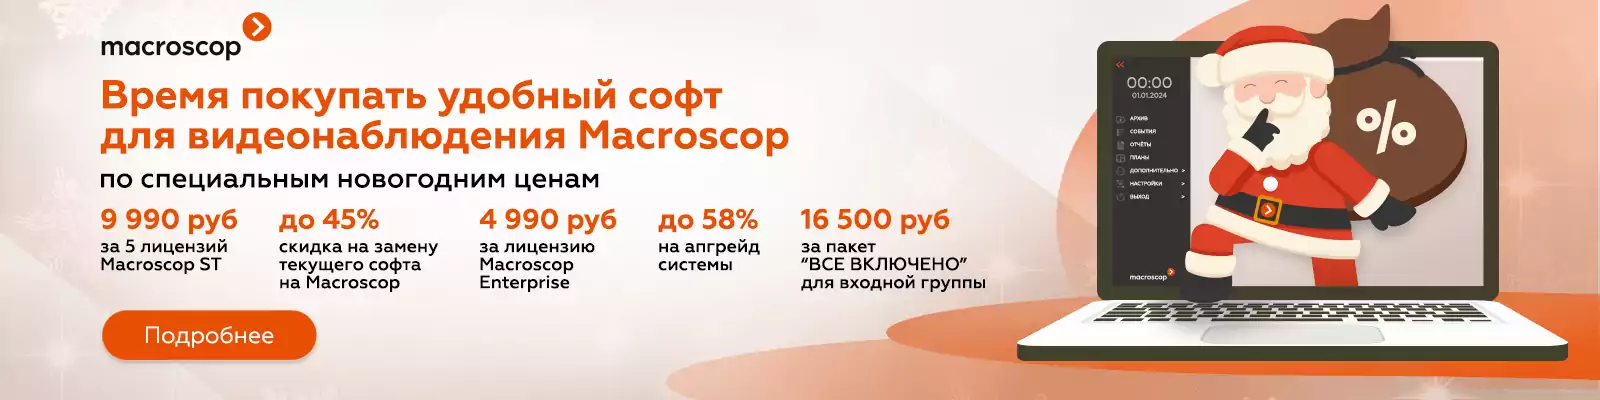 Macroscop запустил новогодние акции на удобный софт для видеонаблюдения. 